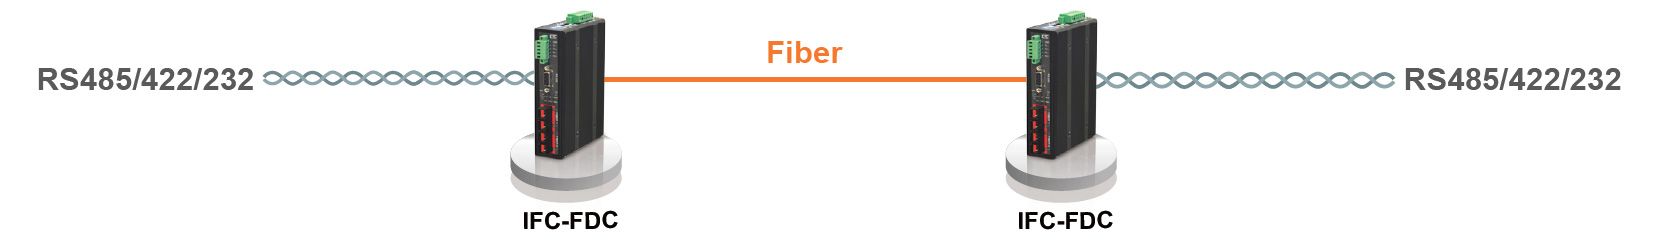 IFC-FDC Topologie de point à point en fibre et application